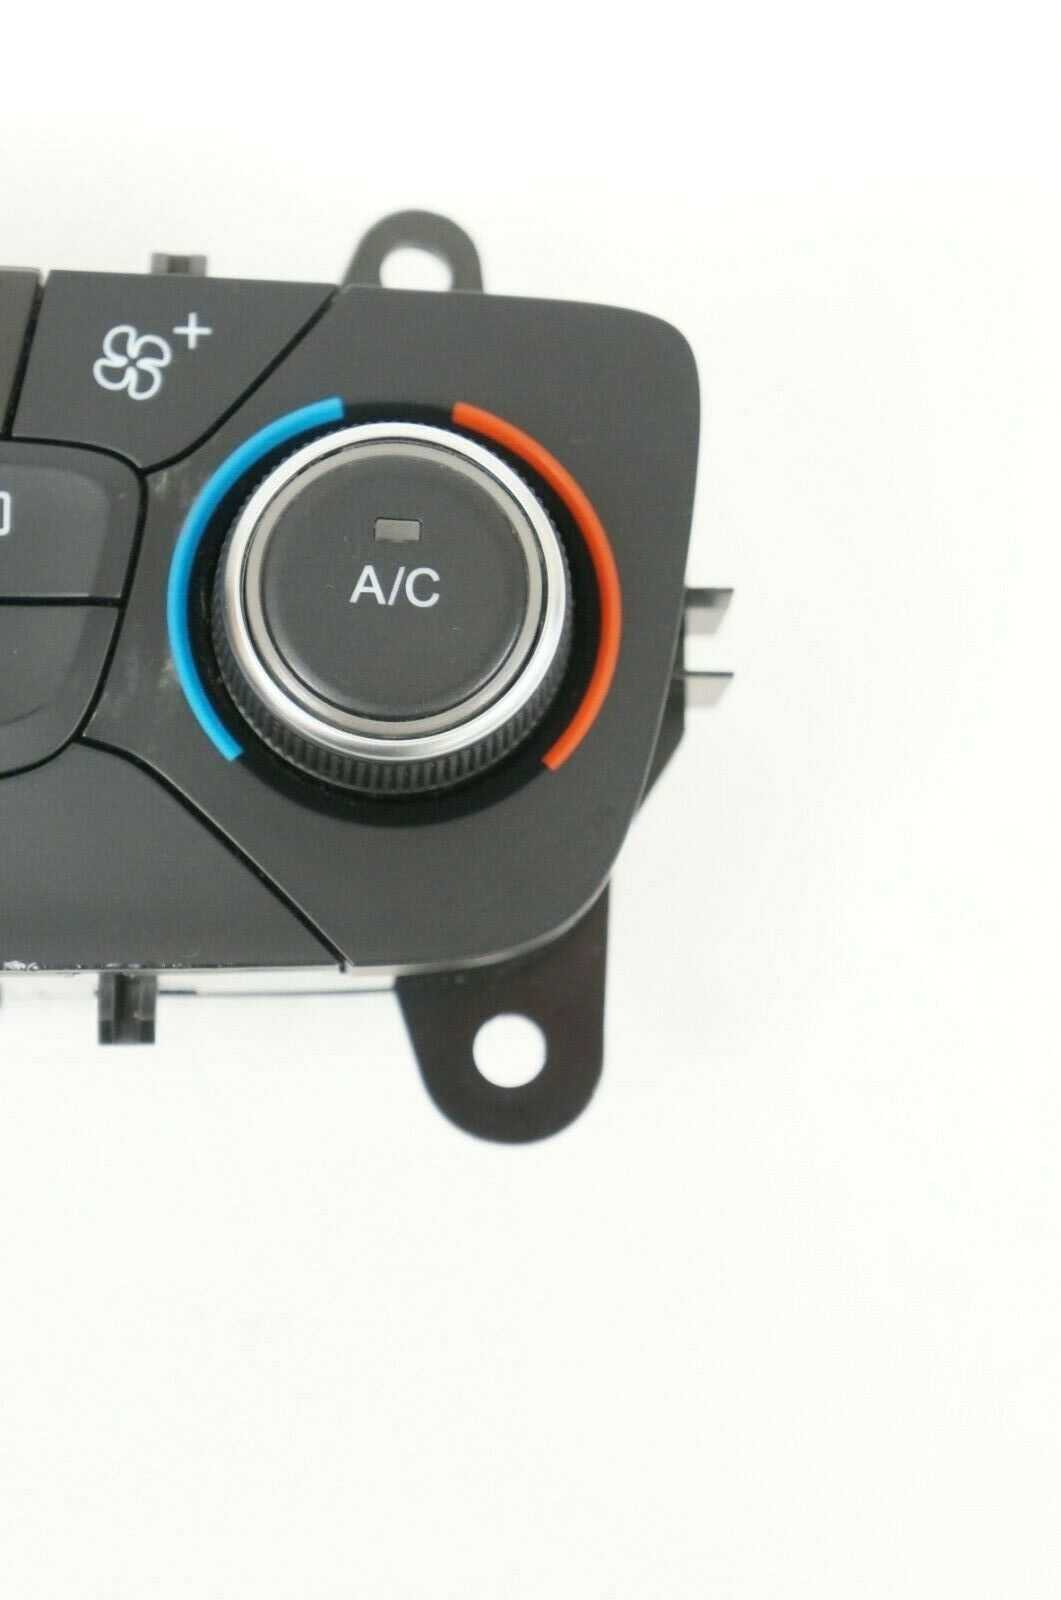 2015-2018 Ford Focus AC Heater Temperature Control Unit F1Et-18C612-AJ OEM Alshned Auto Parts